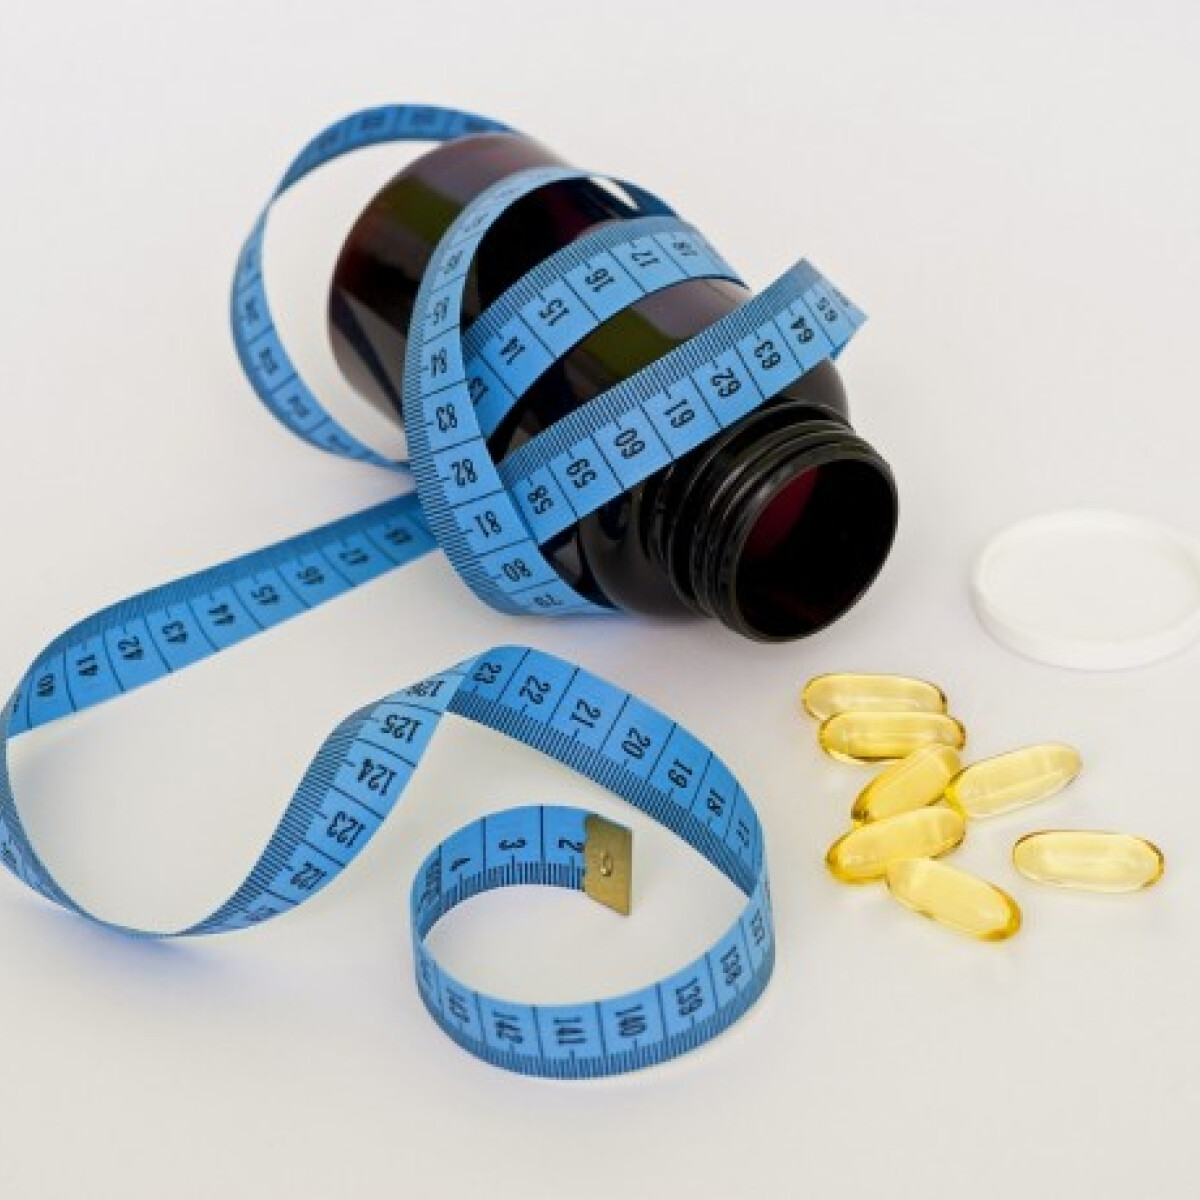 Ionamin fogyás - Érdemes megpróbálni a fogyókúrás gyógyszereket?